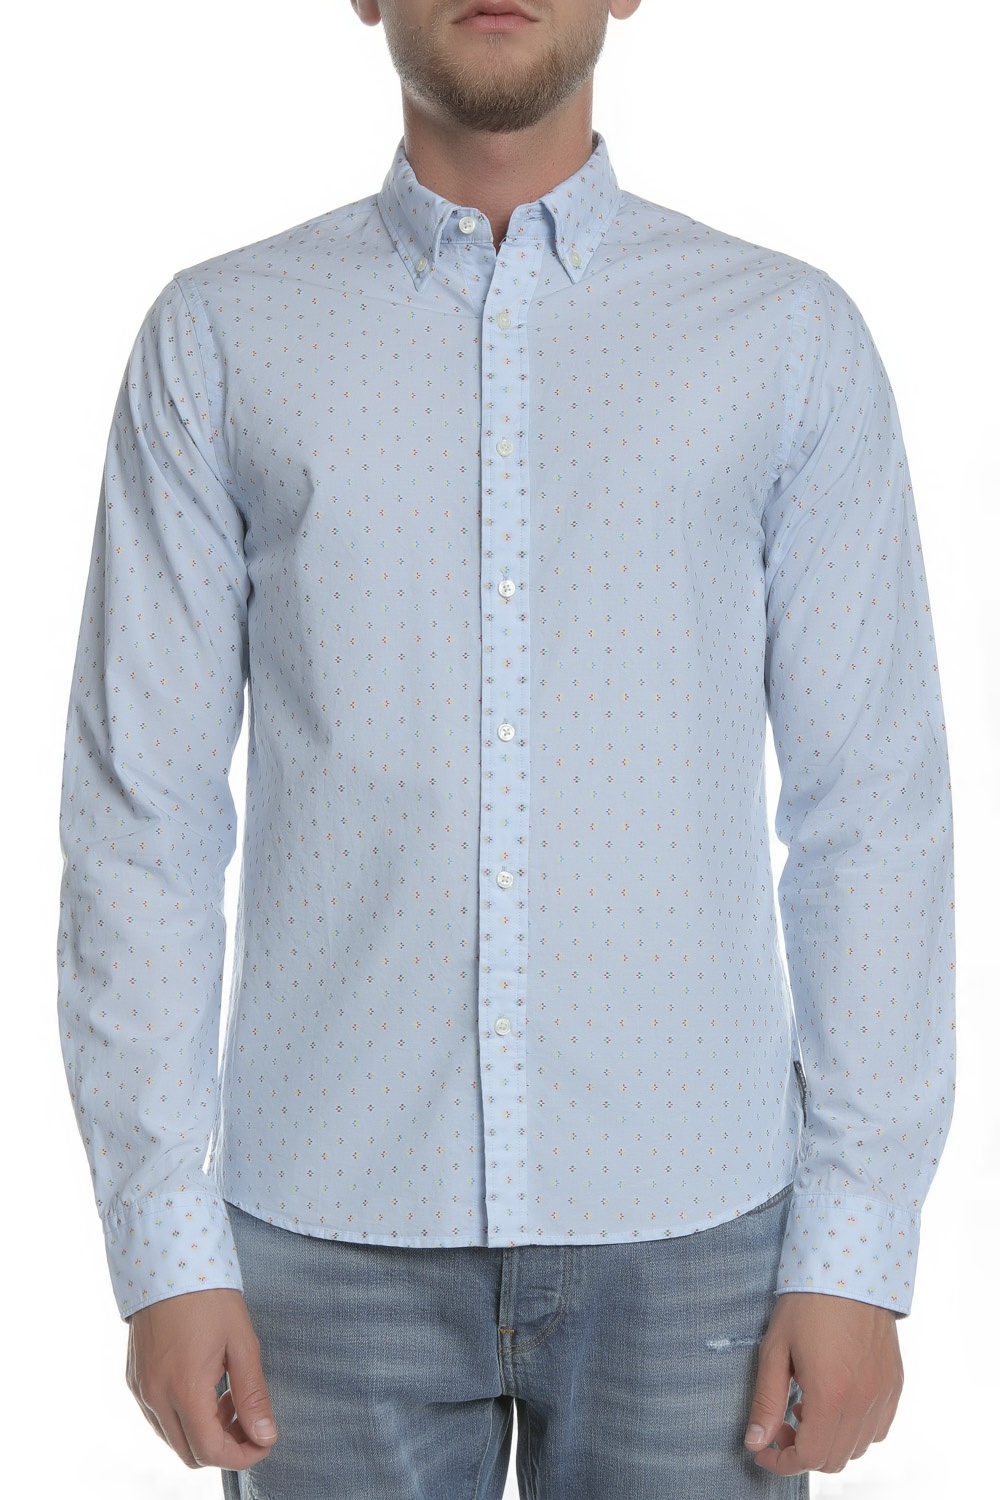 Ανδρικά/Ρούχα/Πουκάμισα/Μακρυμάνικα SCOTCH & SODA - Ανδρικό πουκάμισο SCOTCH & SODA γαλάζιο